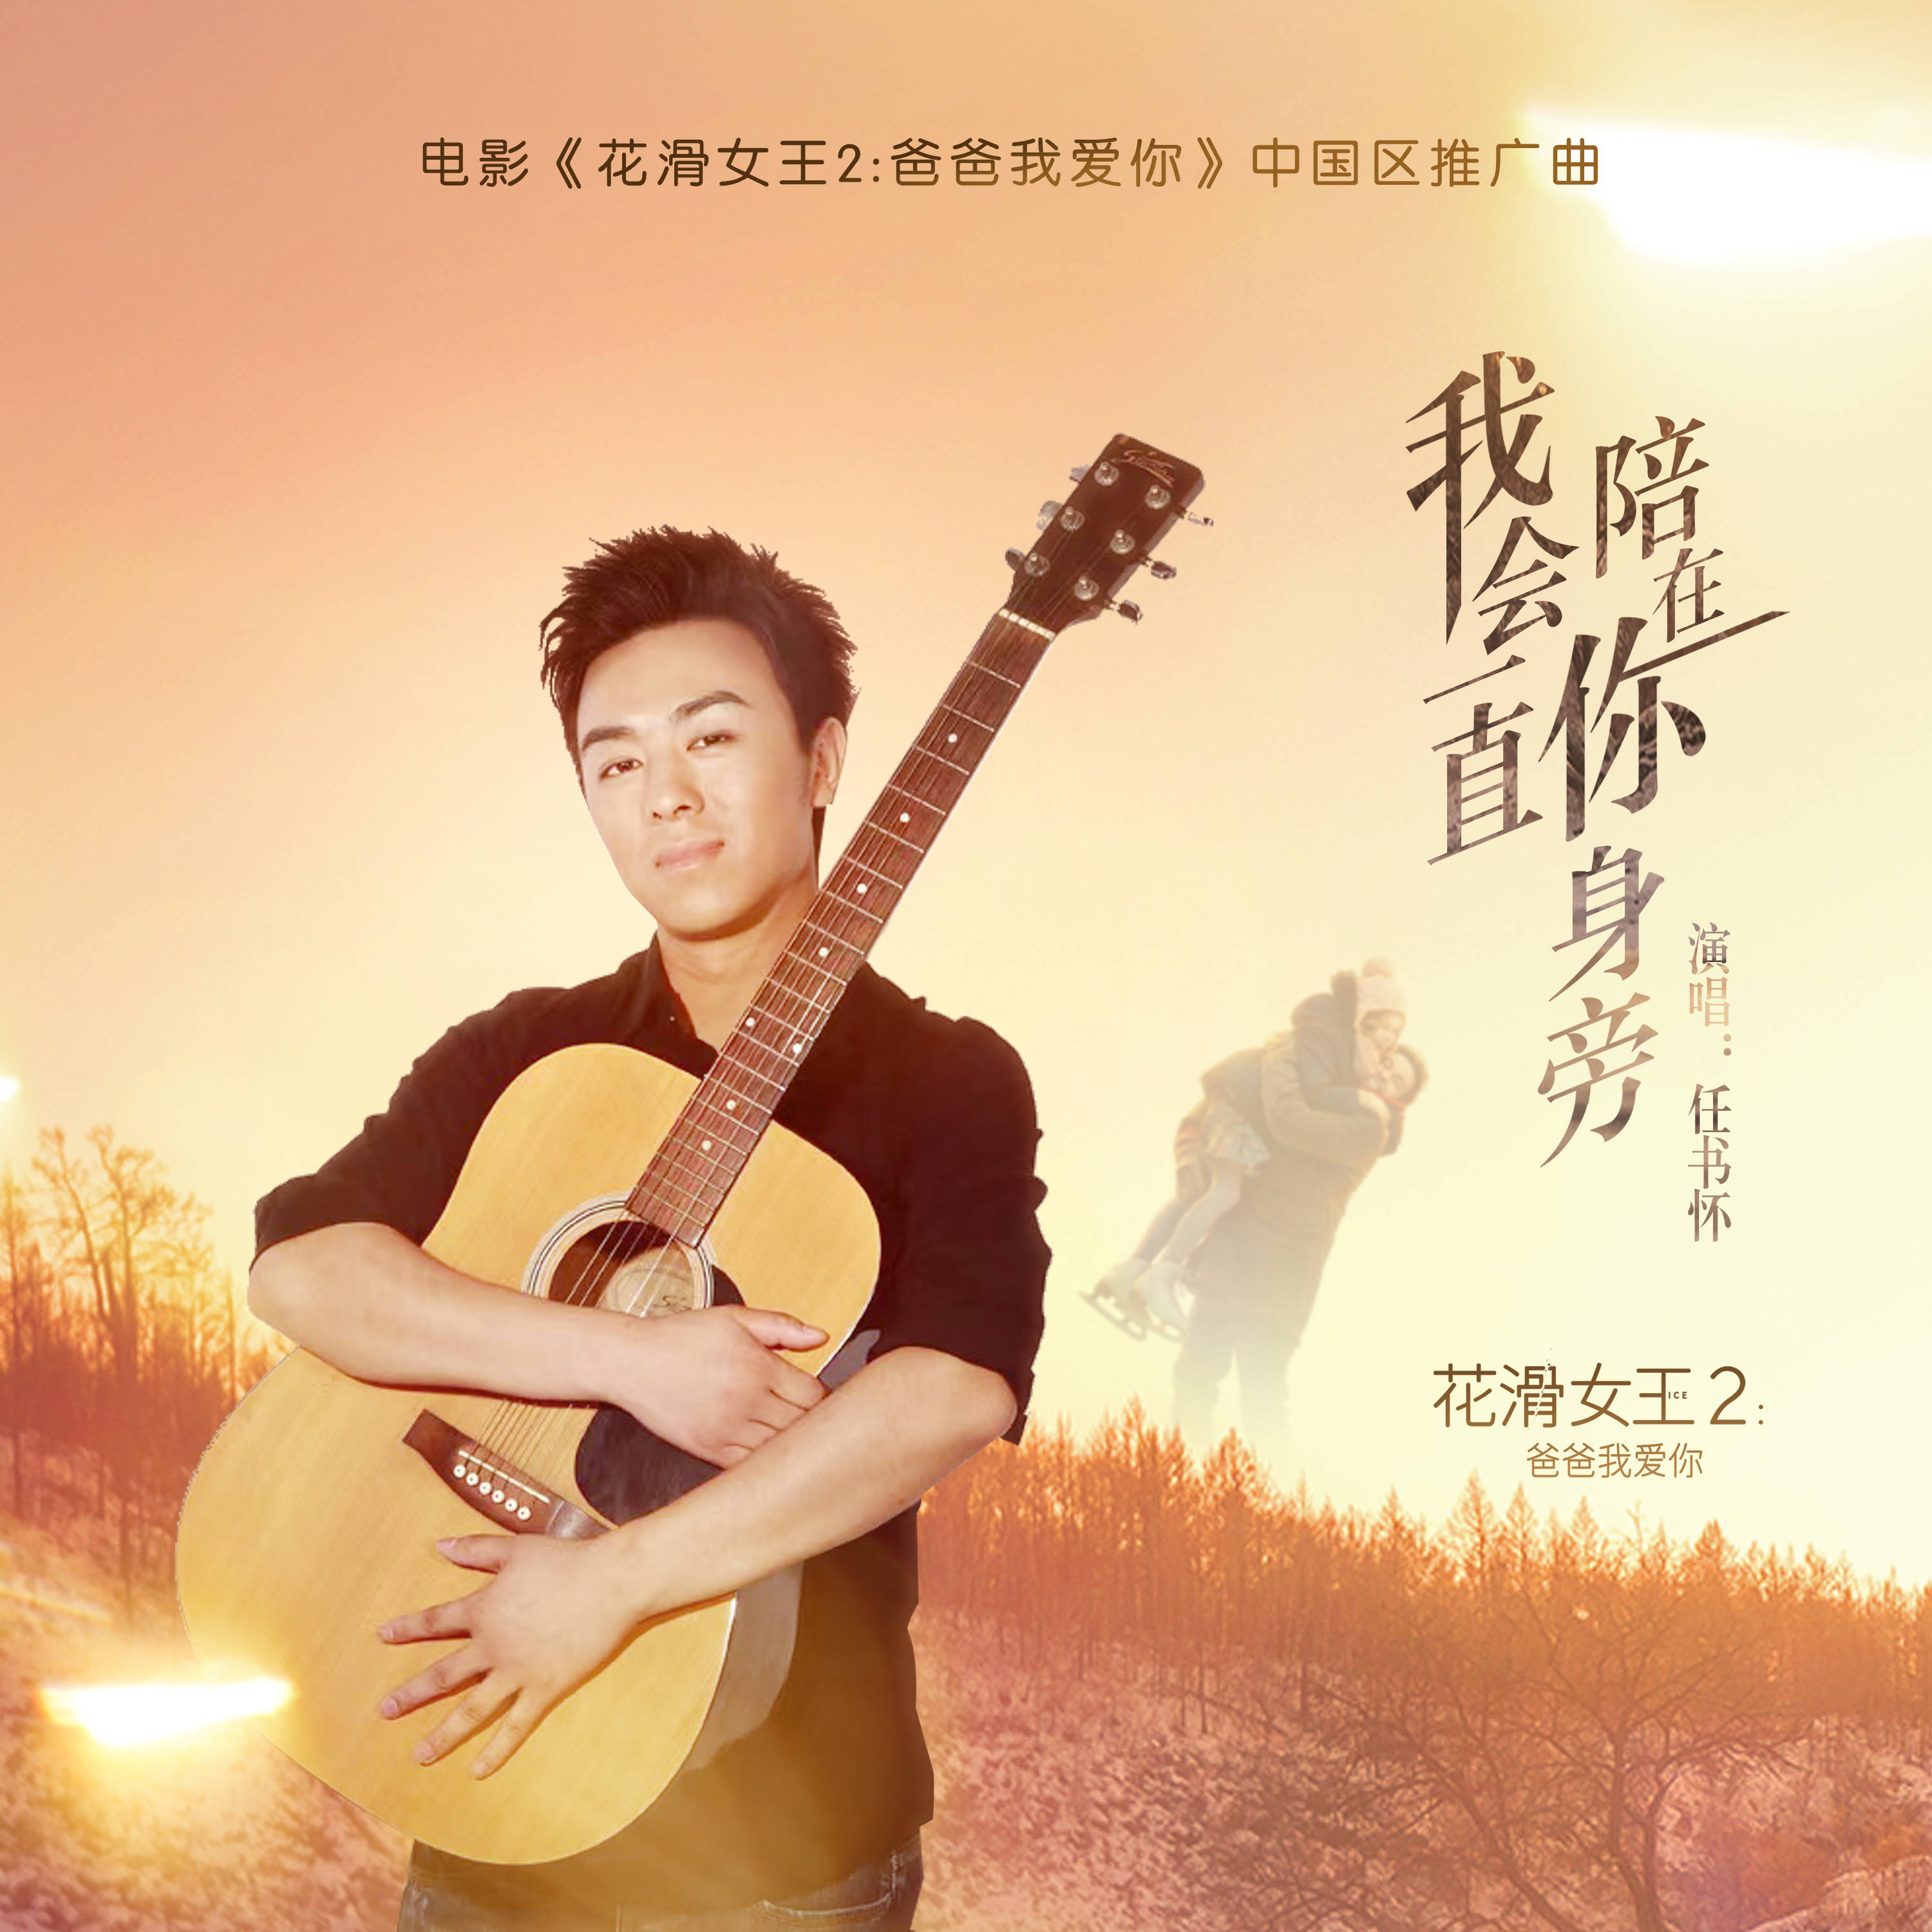 电影《花滑女王2》中国区推广曲由百纳娱乐制作发行